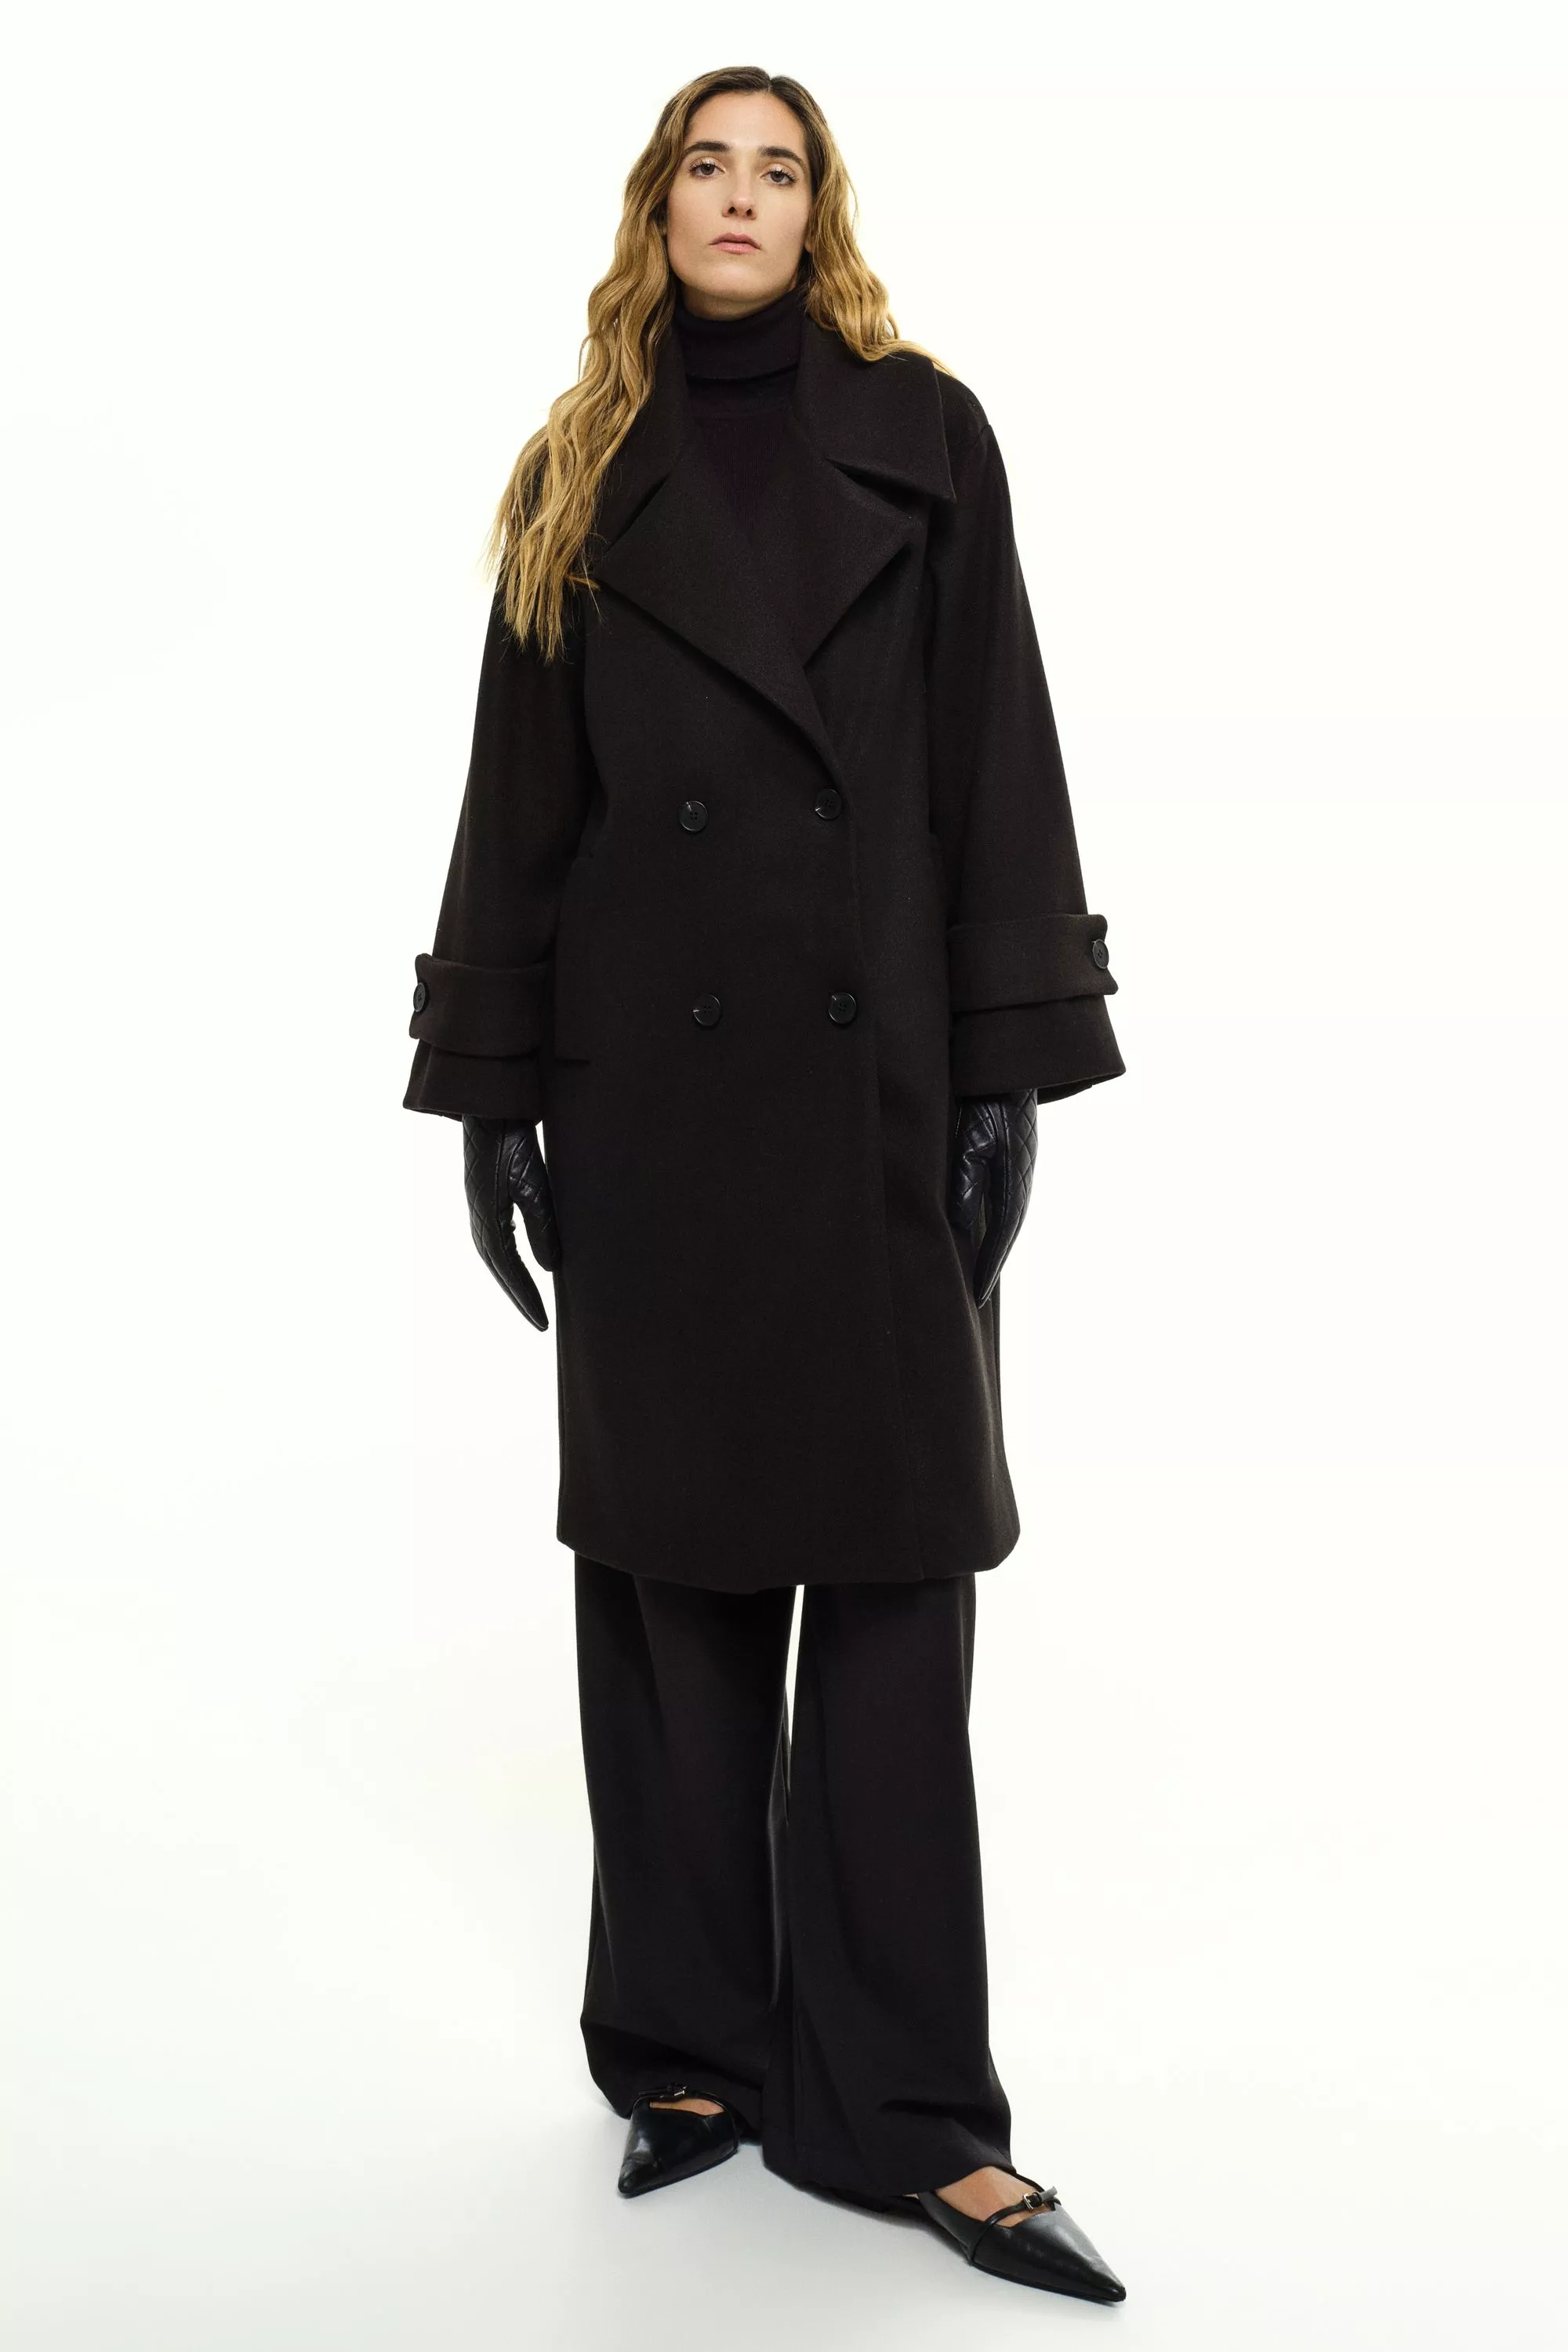 Damen Zweireihiger Mantel in Schwarz von Ricano, Frontansicht am Model